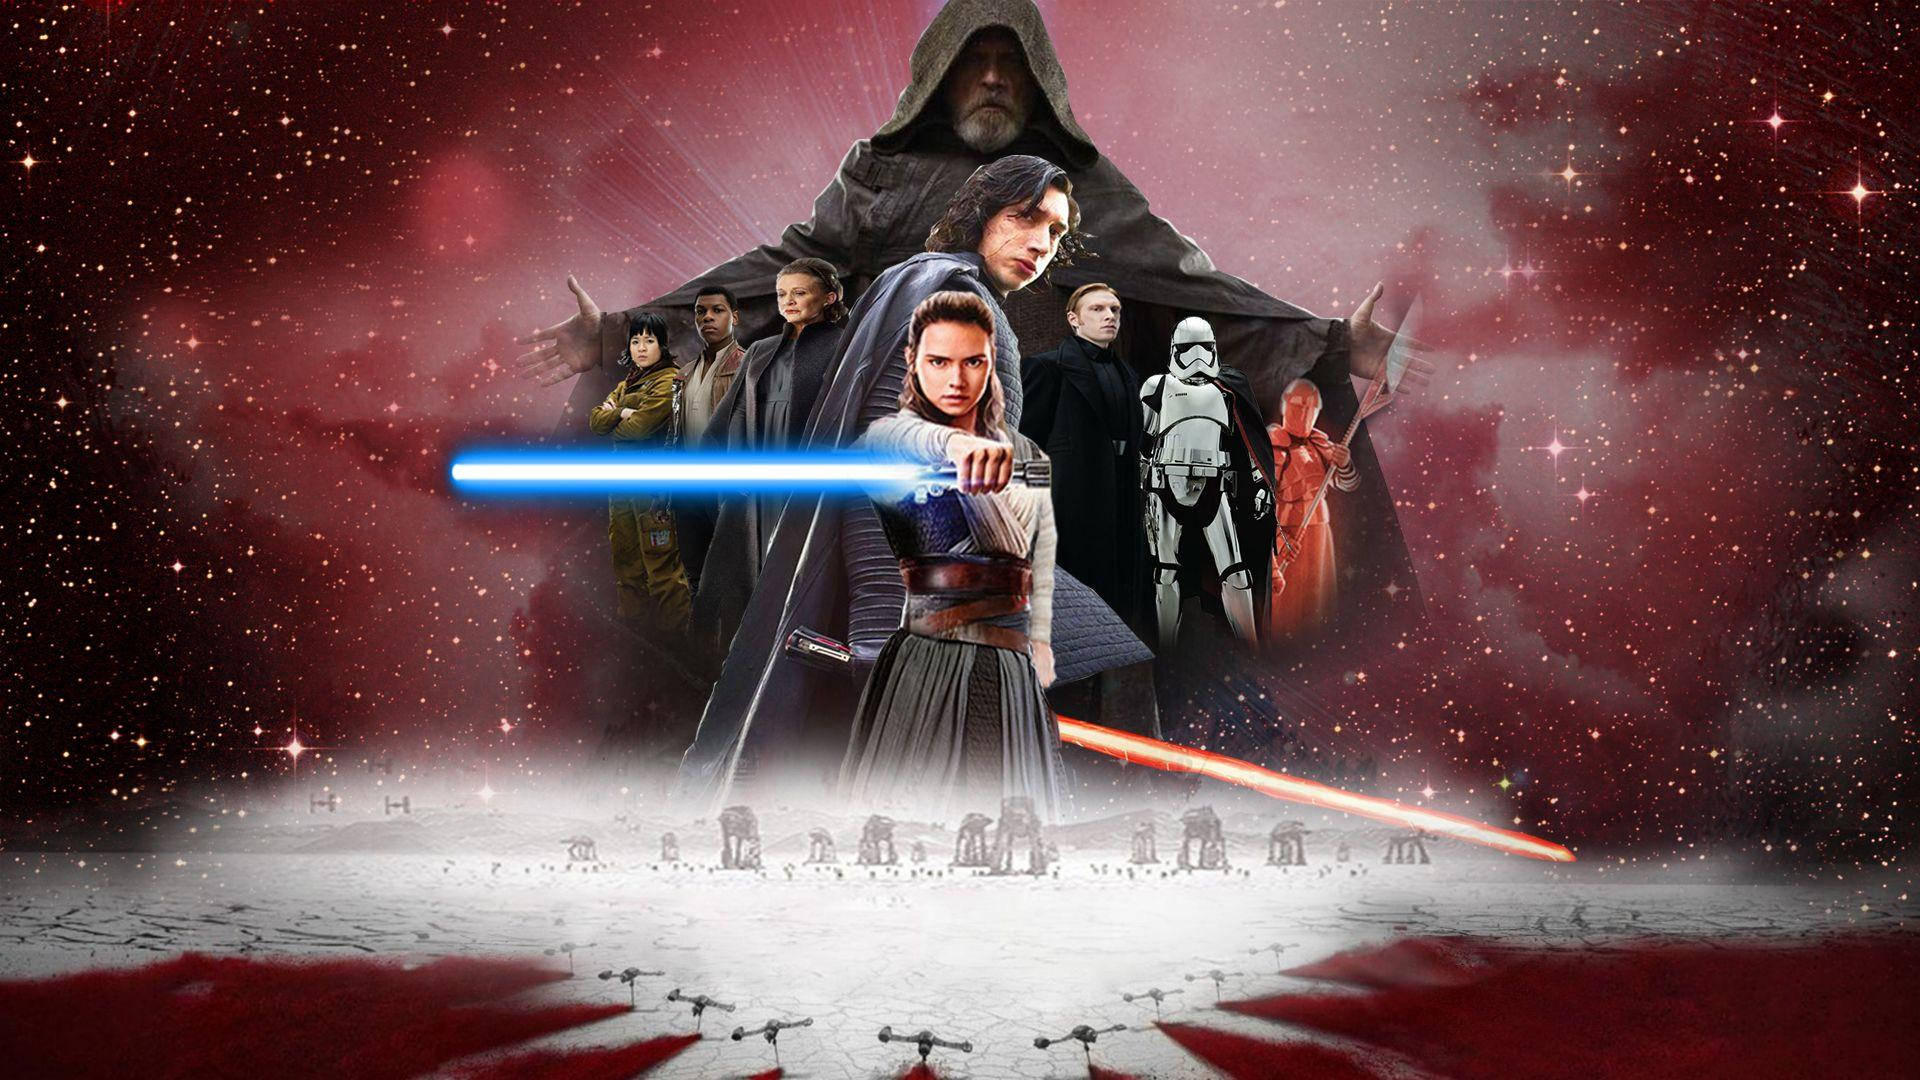 Rey træner med kraften i Star Wars: The Last Jedi. Wallpaper